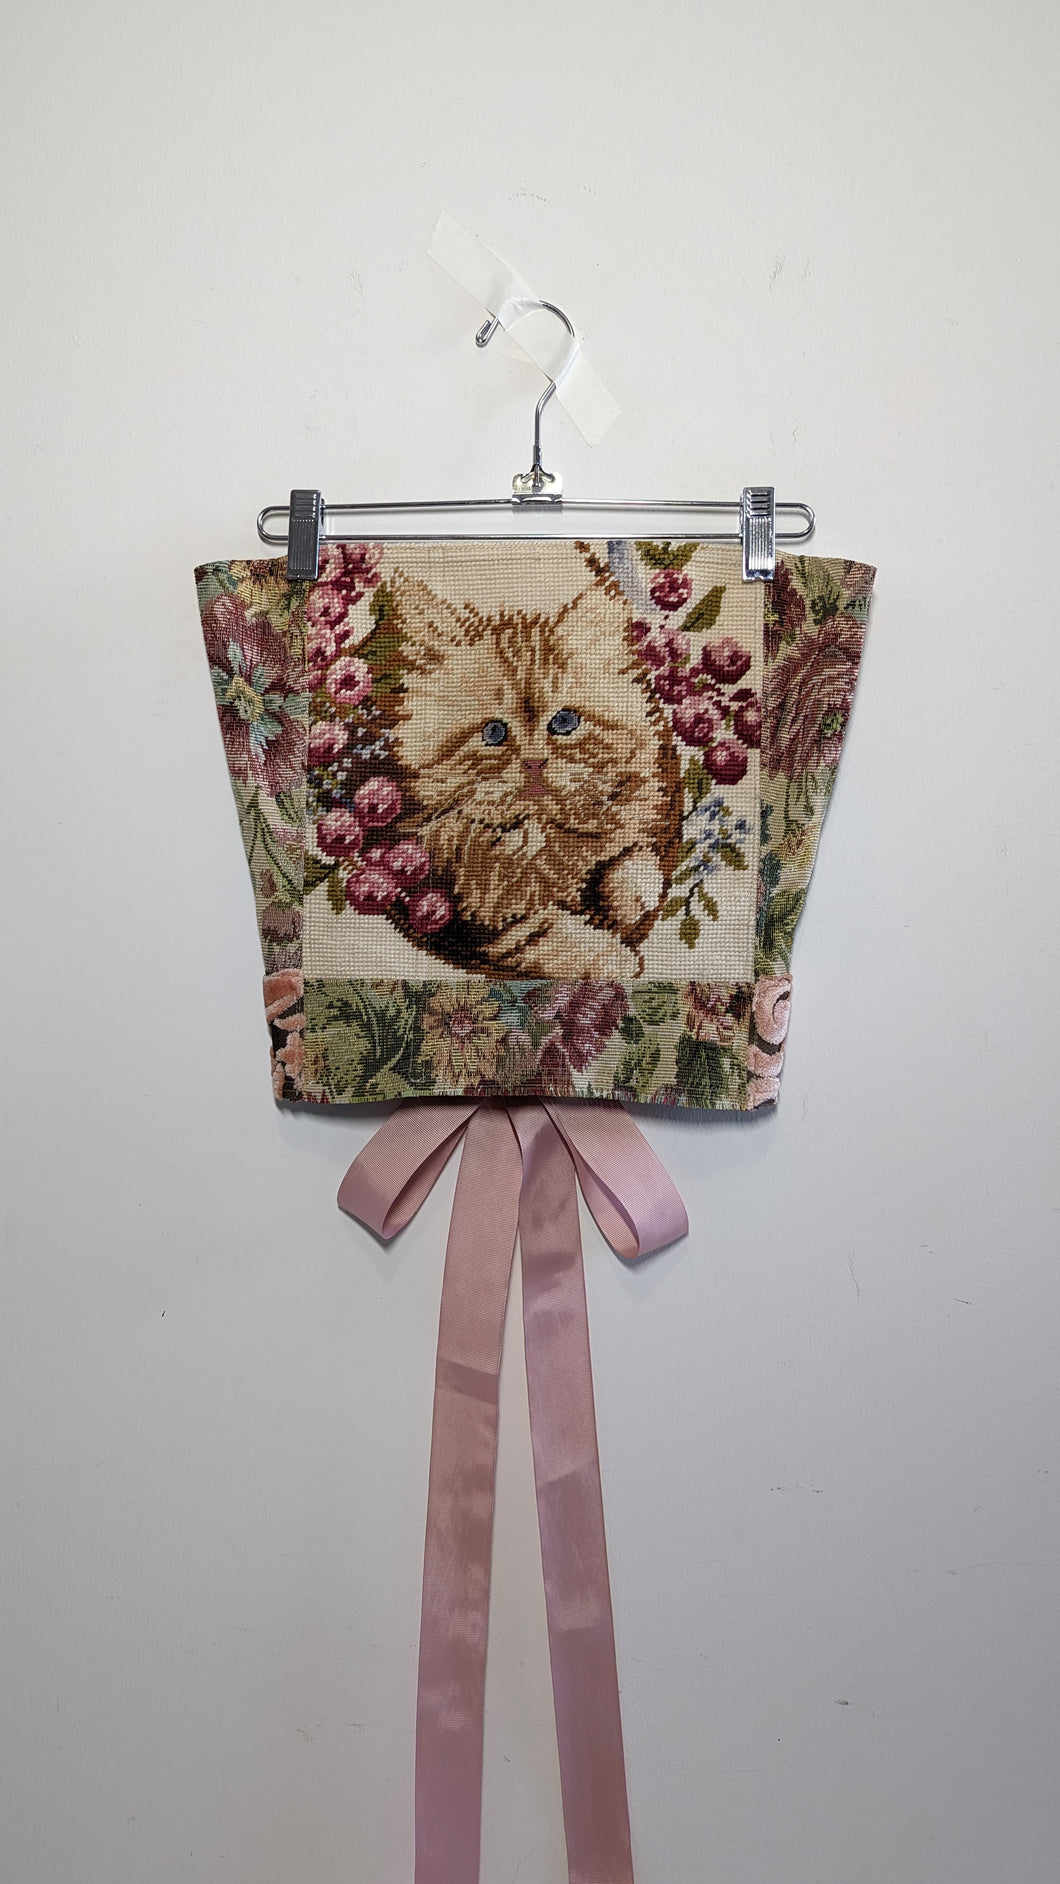 Needlepoint Kitten Tapestry Corset